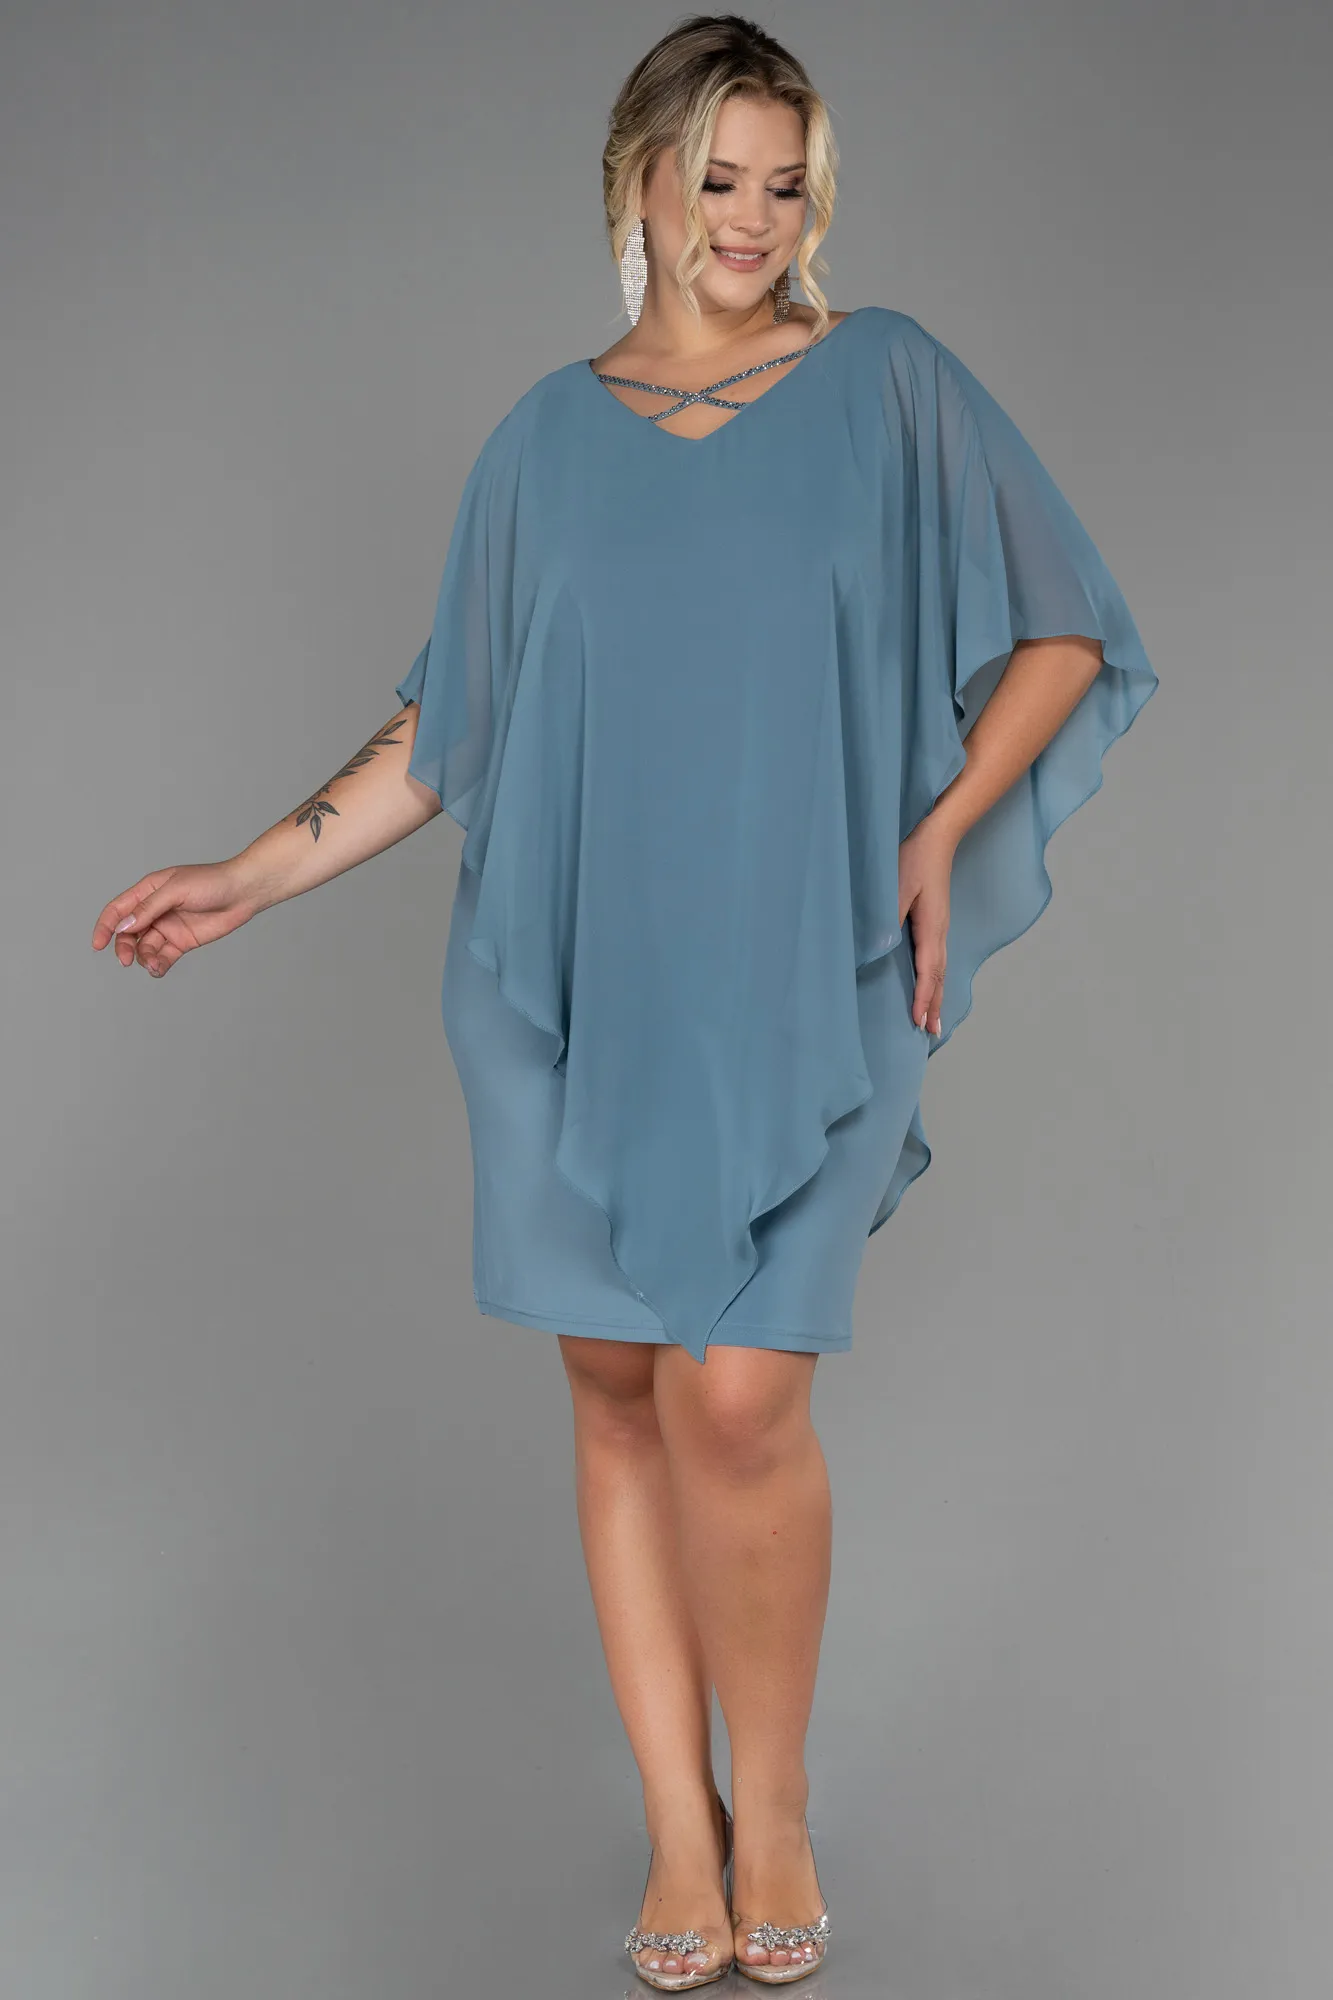 Turquoise-Short Chiffon Plus Size Evening Dress ABK1494